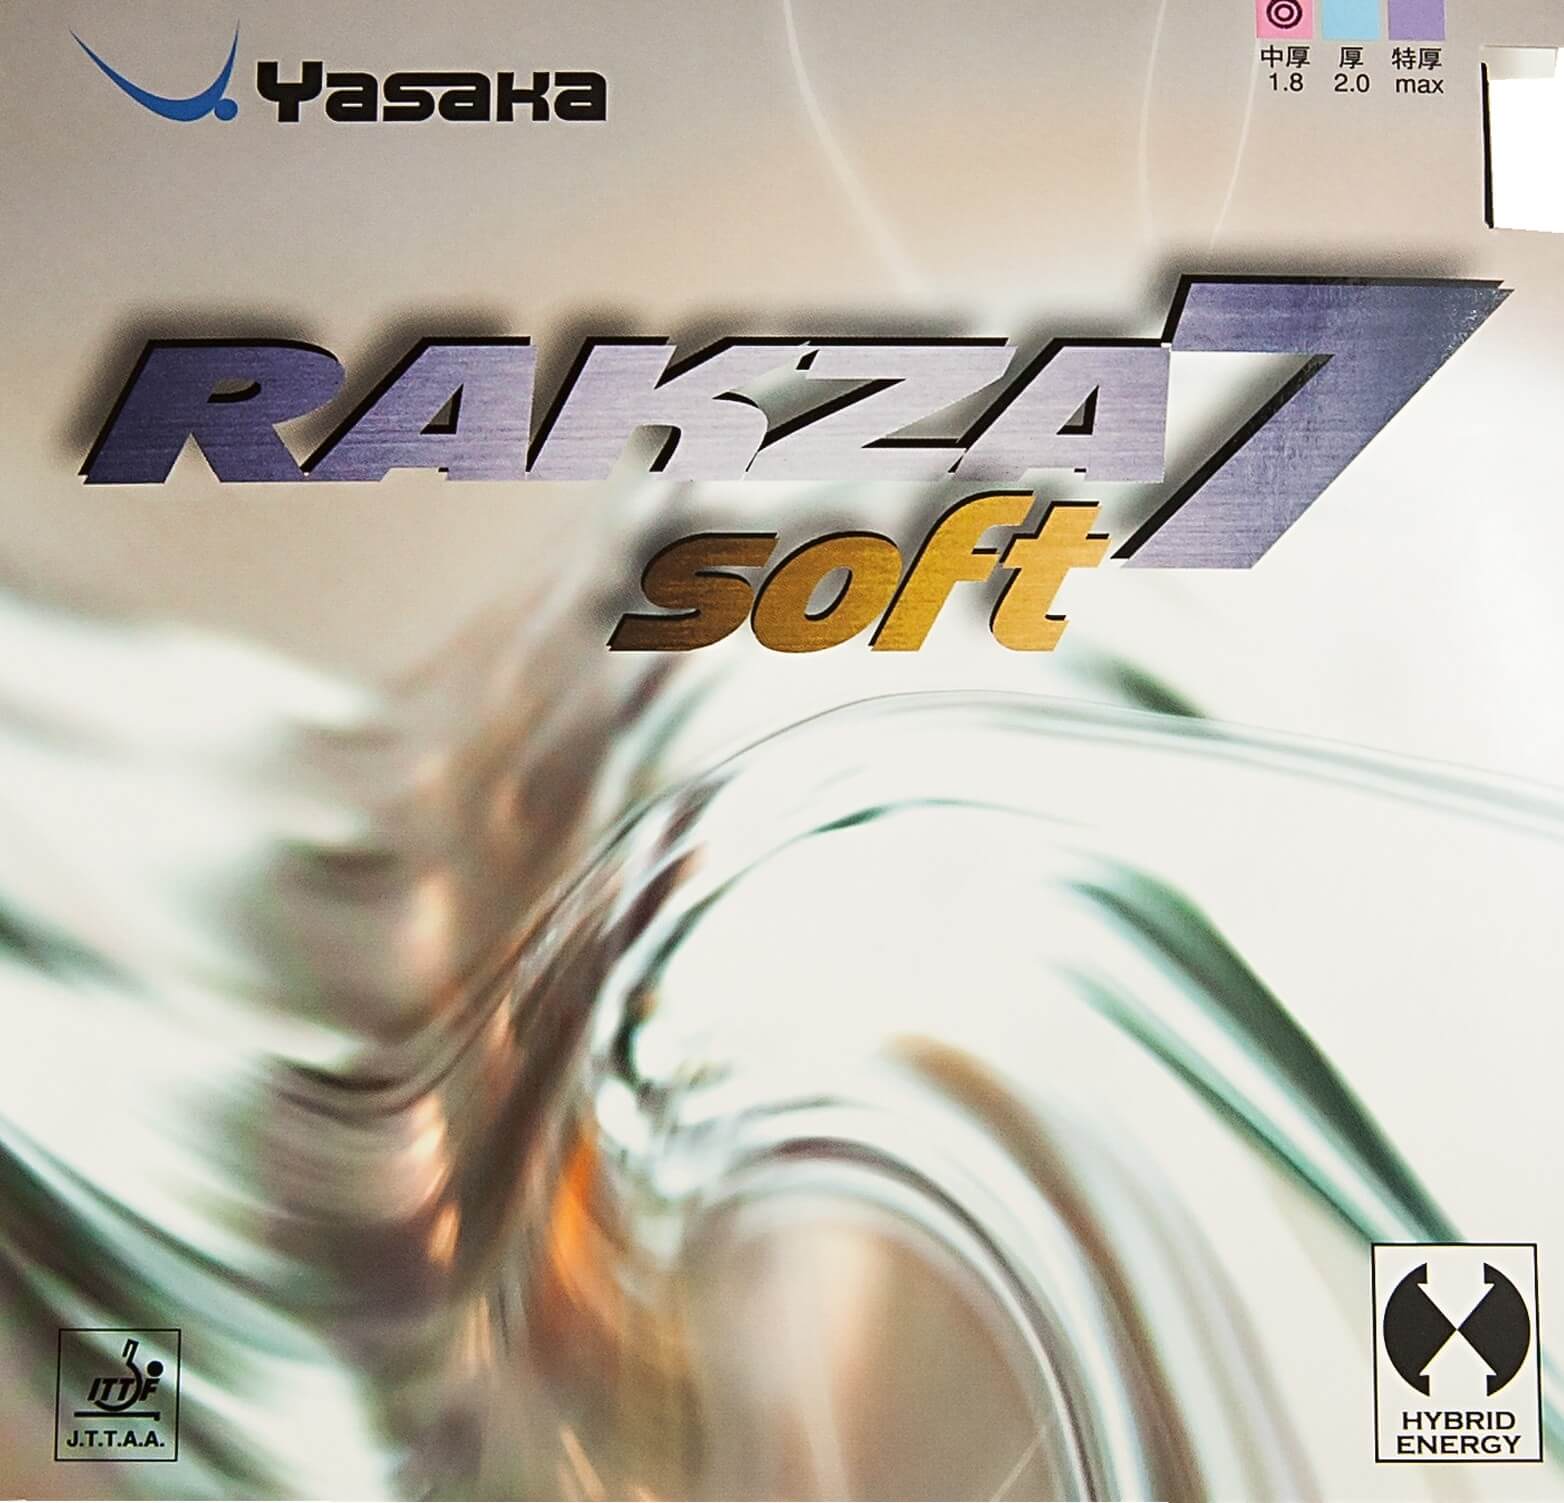 yasaka_rakza_7_soft